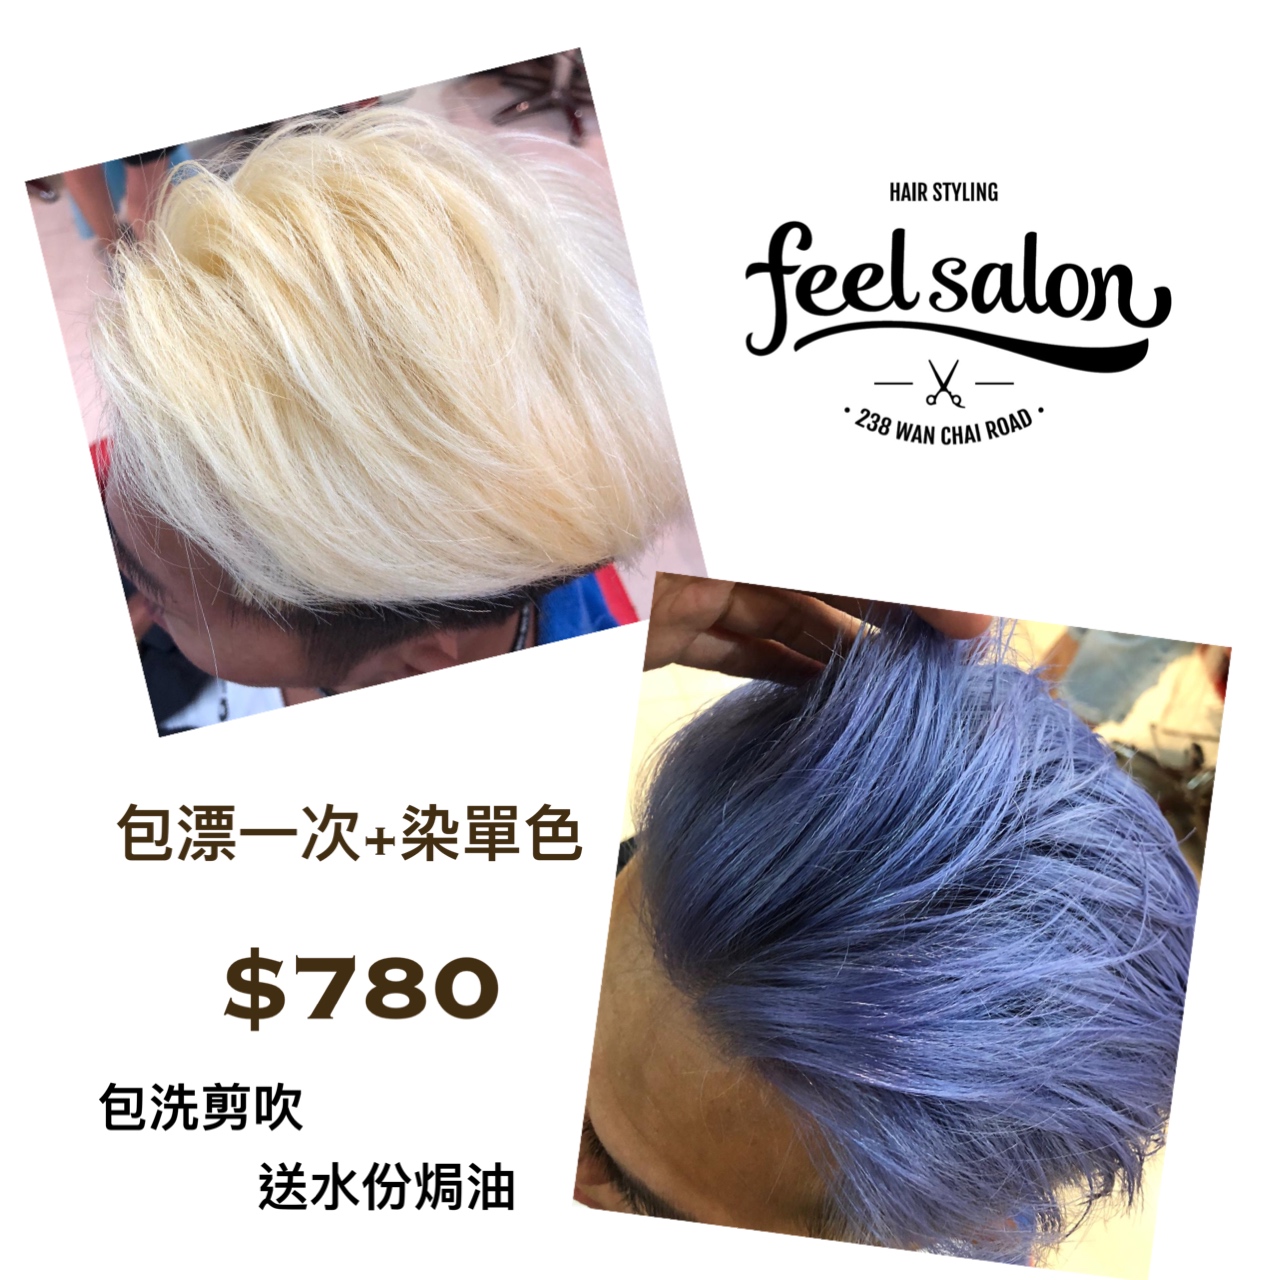 Feel Salon髮型作品: 銀紫色